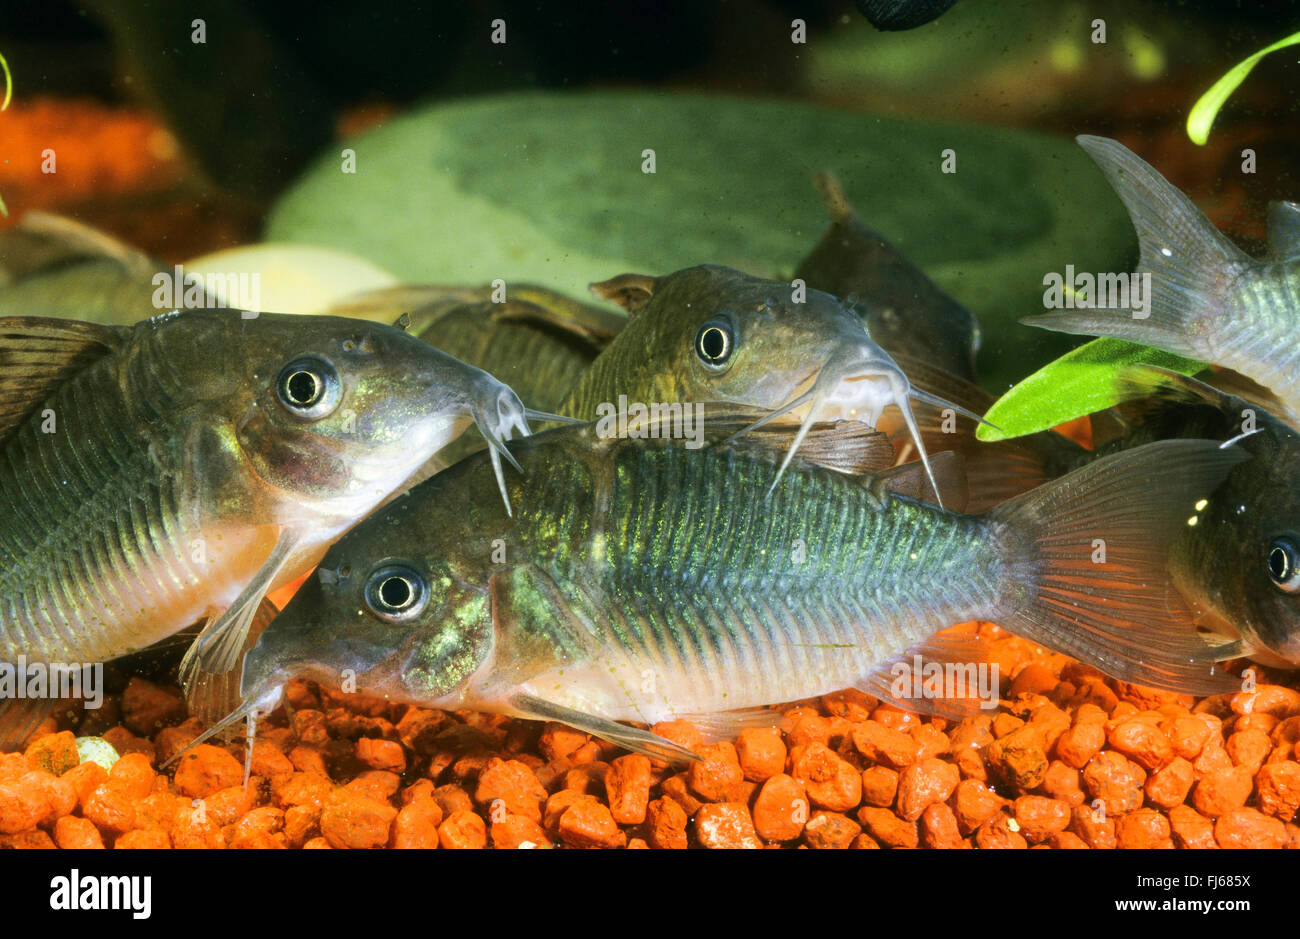 Fin Haut, brochis splendens Corydoras poisson-chat (Émeraude, Brochis splendens, Callichthys splendens), petite école Banque D'Images